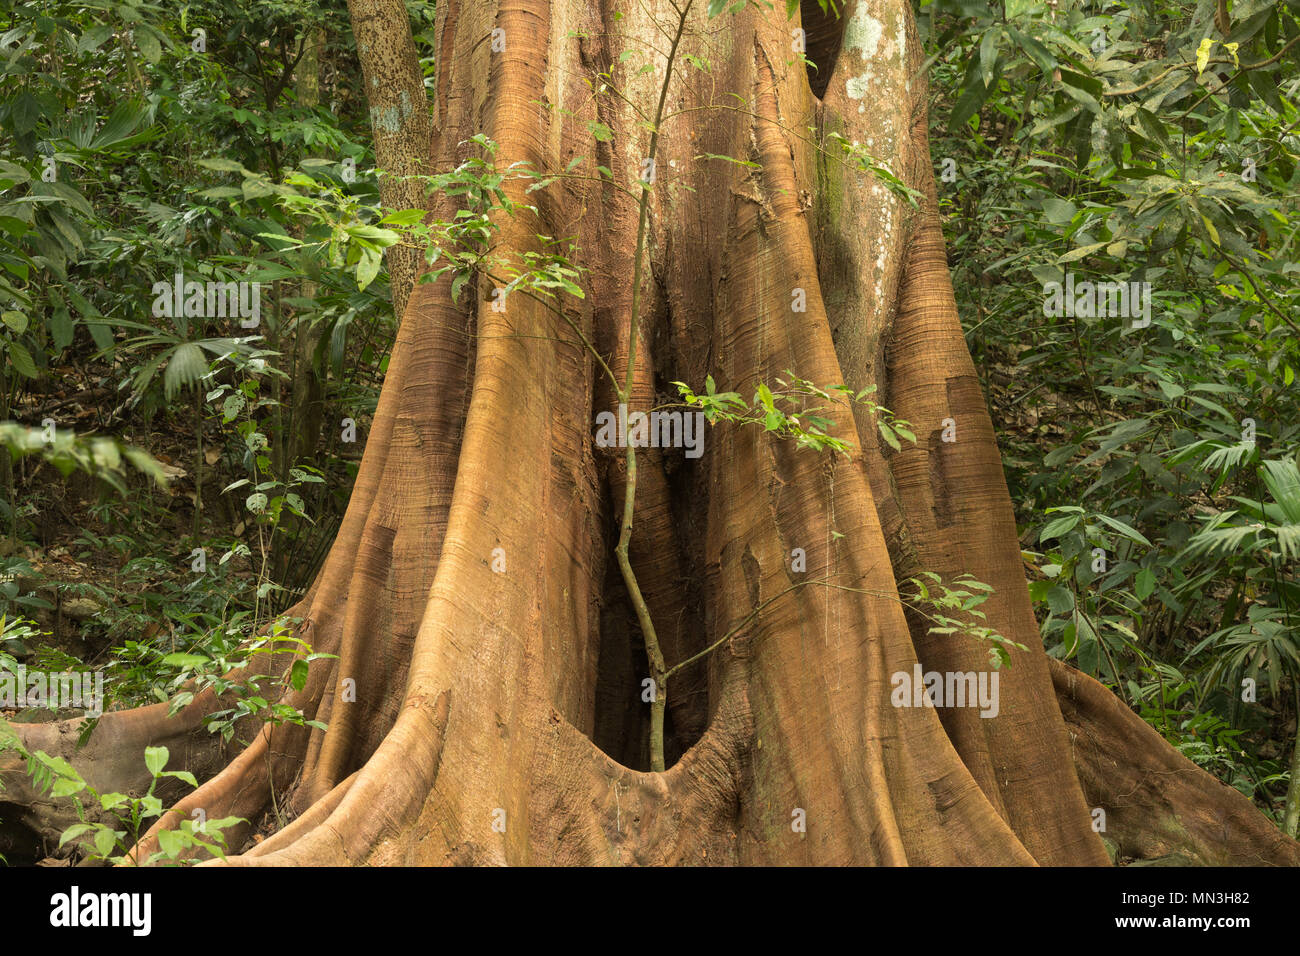 Le contrefort racines d'un arbre Ficus dans la jungle, la Quebrada Valencia, Magdalena, Colombie Banque D'Images